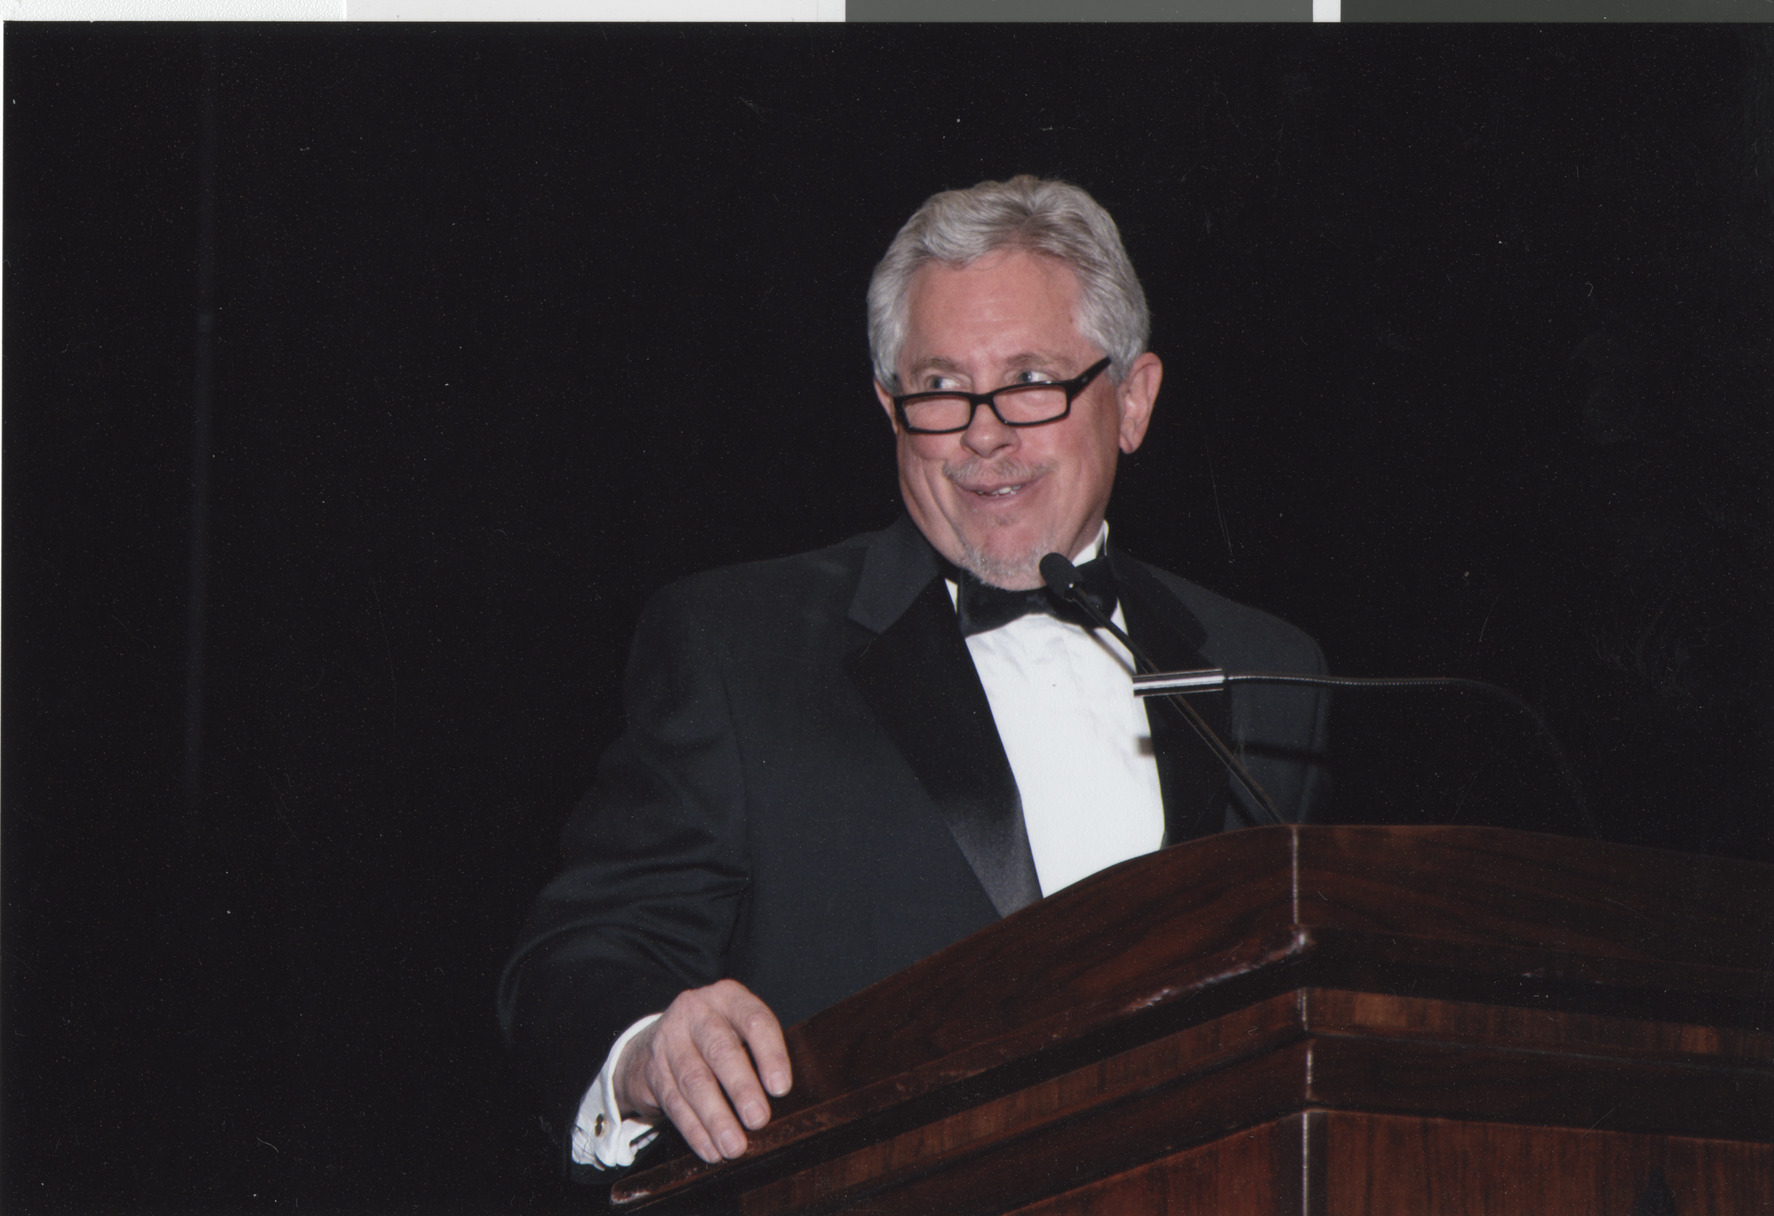 Photograph of a man at a podium, April 2008